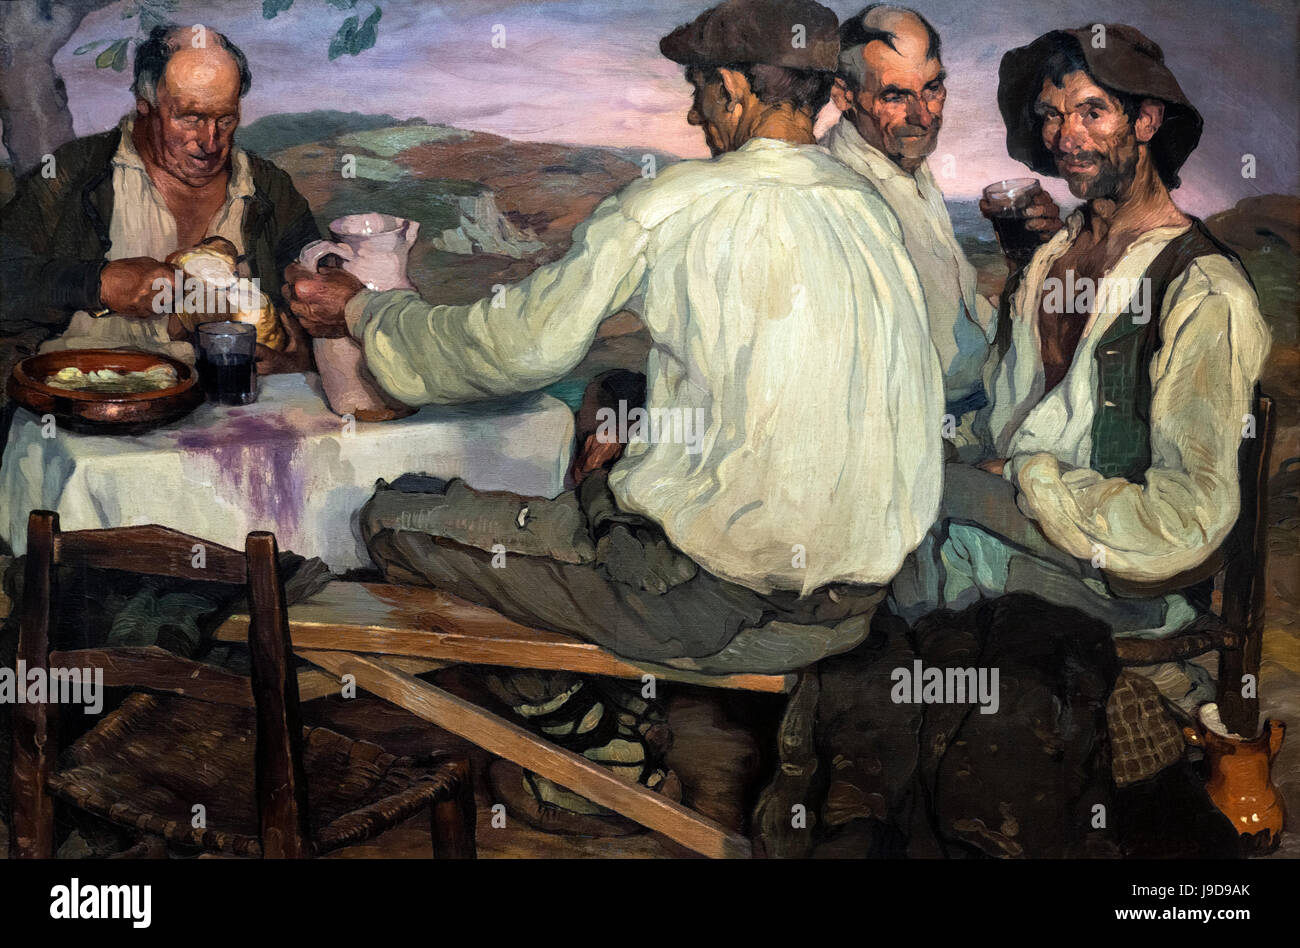 Gli agricoltori spagnoli da Ignacio Zuloaga (1870-1945), olio su tela, 1905 Foto Stock